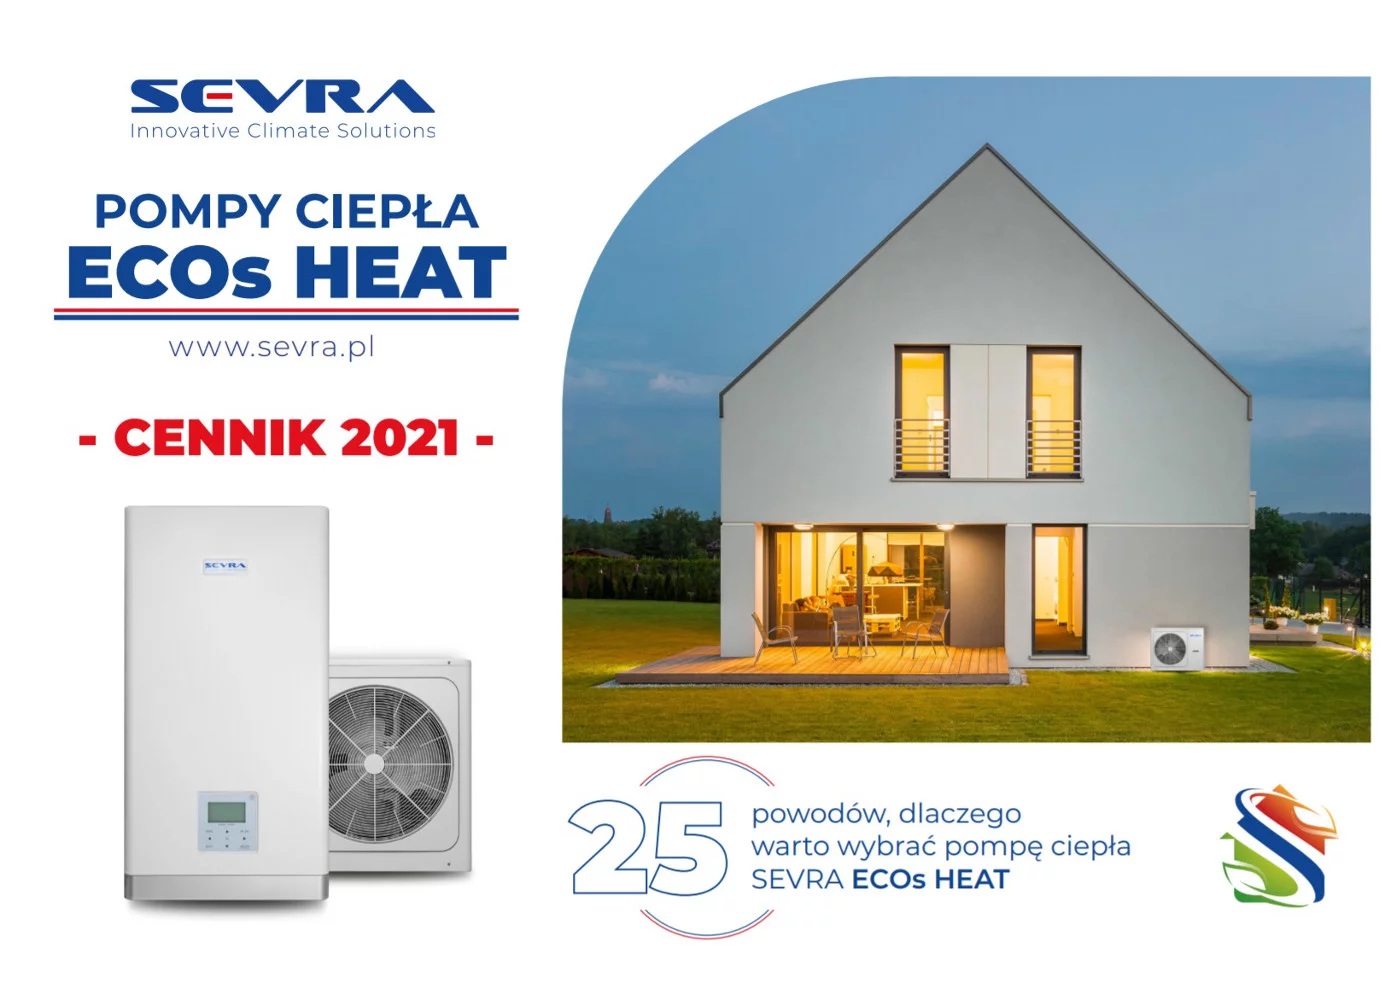 SEVRA Eco S Heat – nowoczesne ogrzewanie!